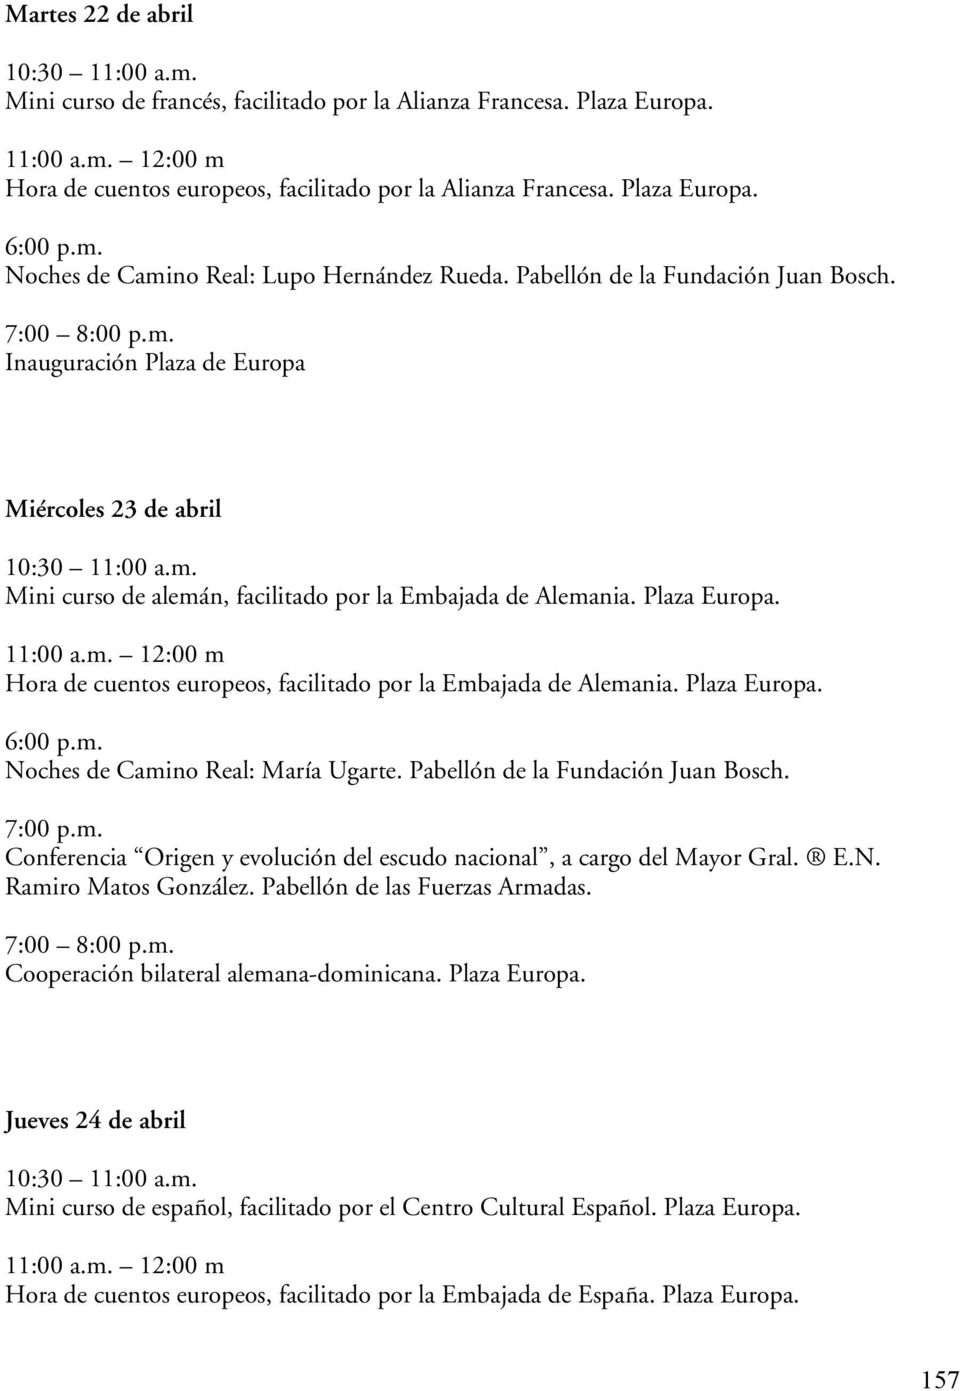 Hora de cuentos europeos, facilitado por la Embajada de Alemania. Plaza Europa. Noches de Camino Real: María Ugarte. Pabellón de la Fundación Juan Bosch.